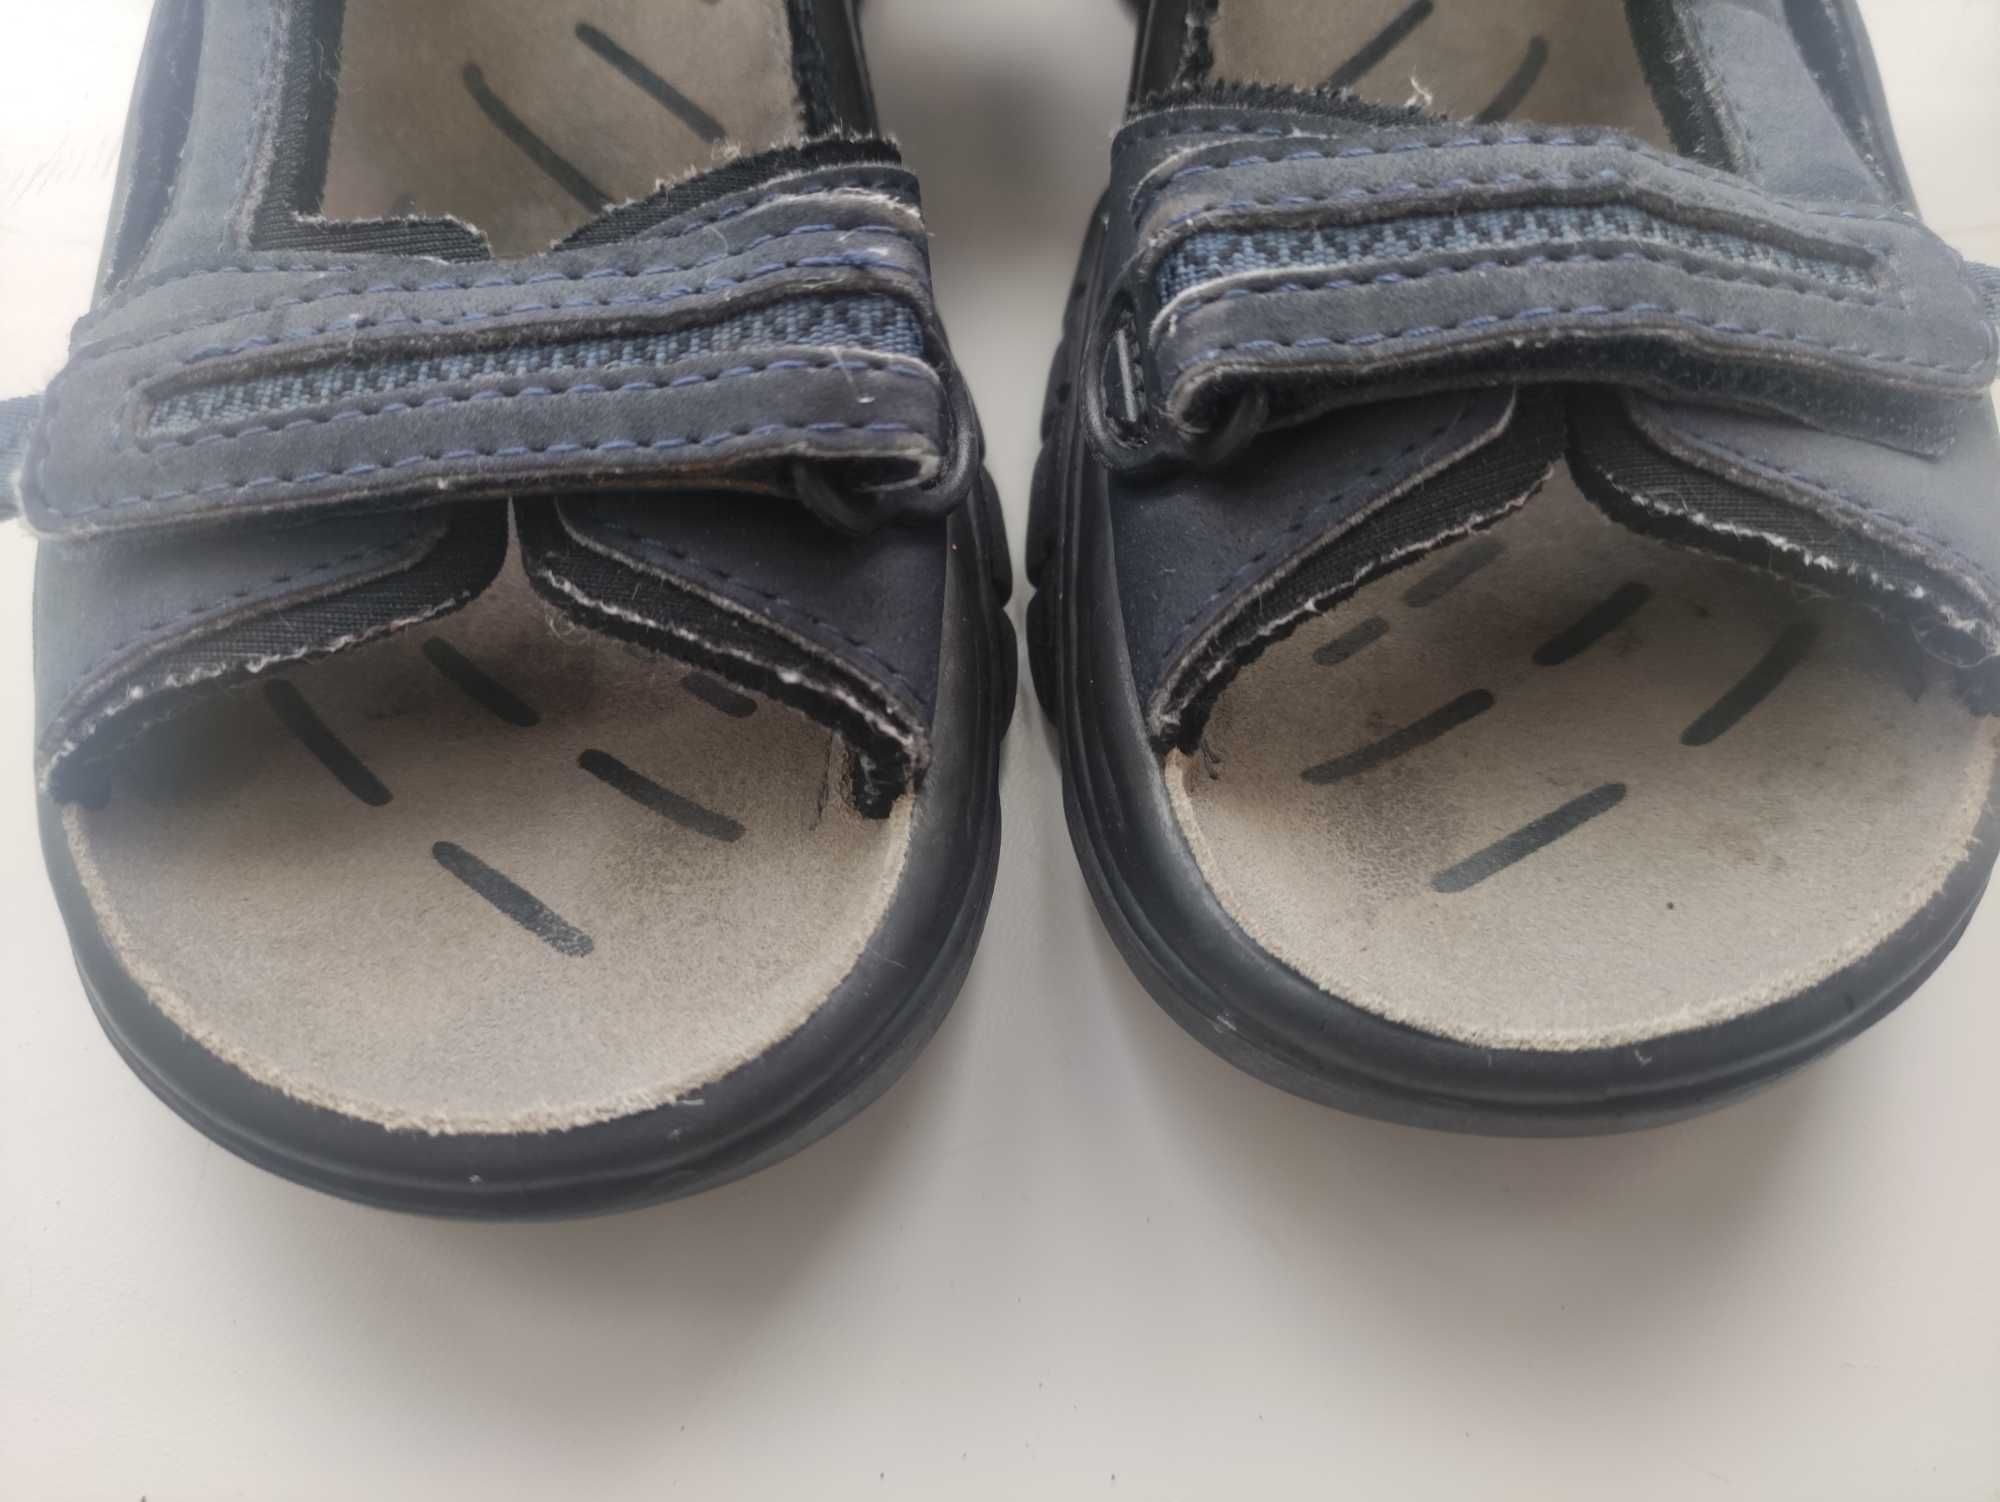 Фирменные босоножки, сандали в состоянии новых